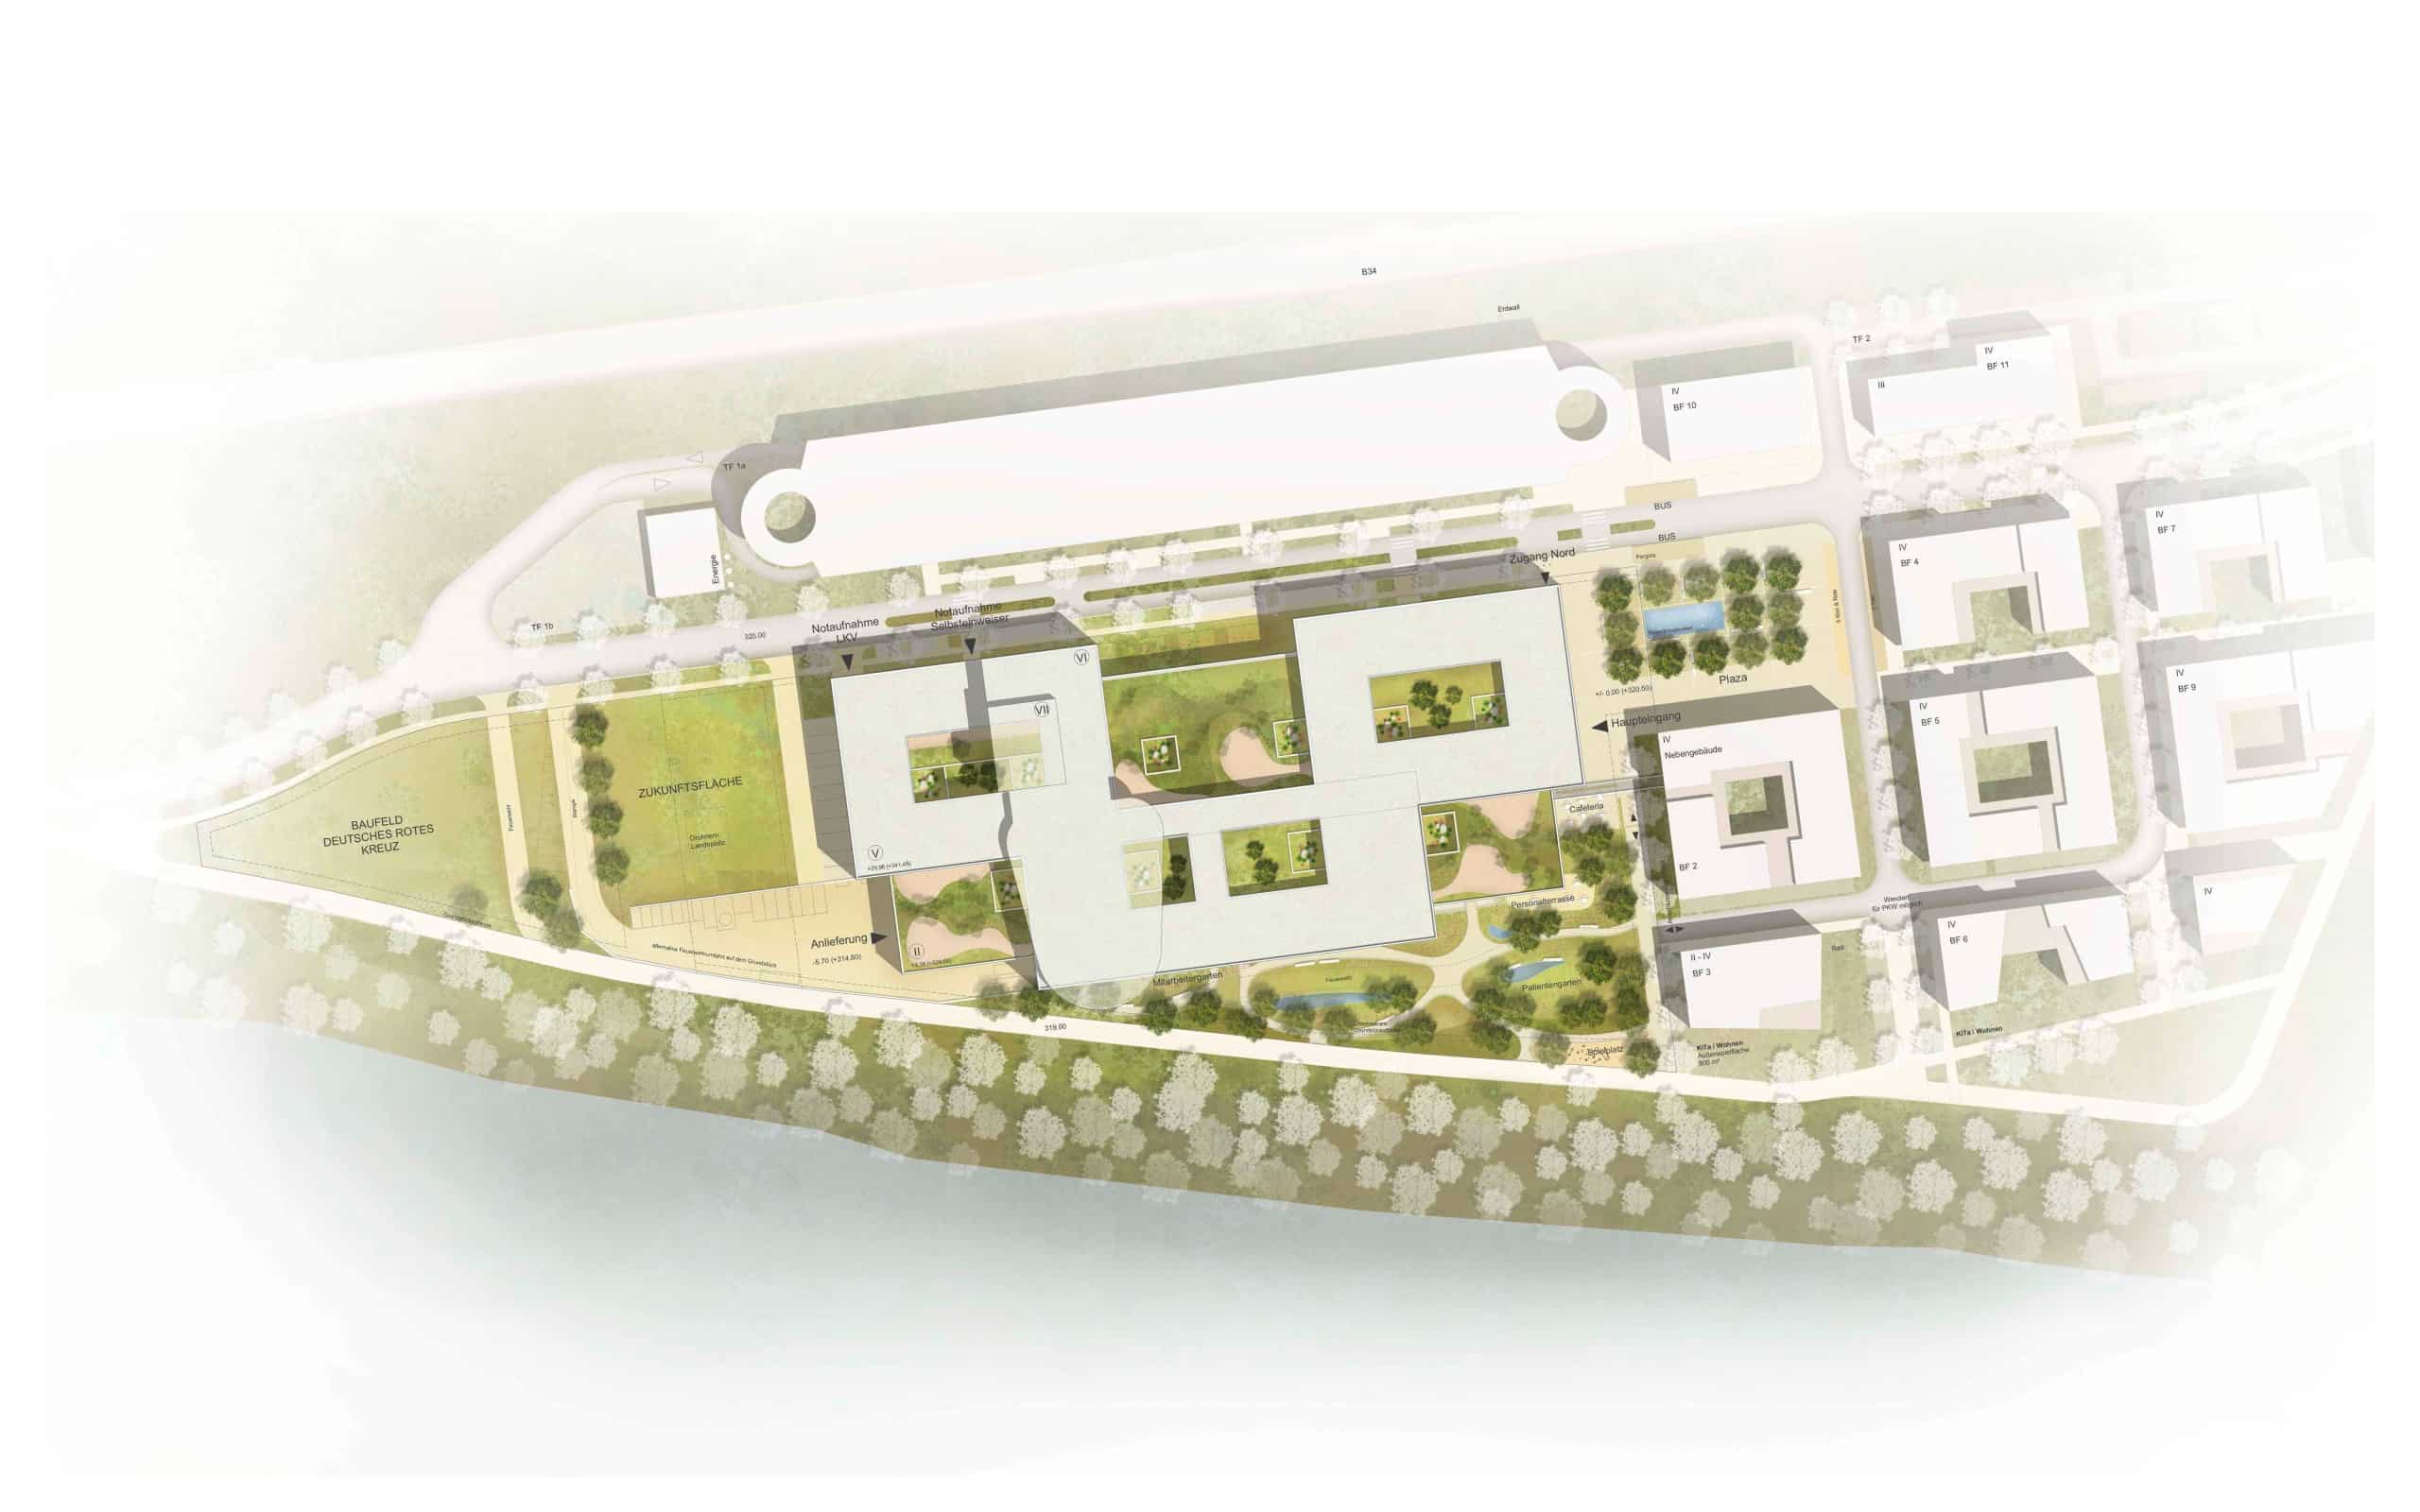 Der Grundstücksflächenplan für das Zentralklinikum Hochrhein zeigt, wie der Gebäudekomplex einer Stadt ähnelt. Copyright: ATP architekten ingenieure | Baumschlager Eberle Architekten (Hinweis: Es handelt sich lediglich um eine Simulation zur besseren Veranschaulichung und nicht um einen finalen Entwurf.)